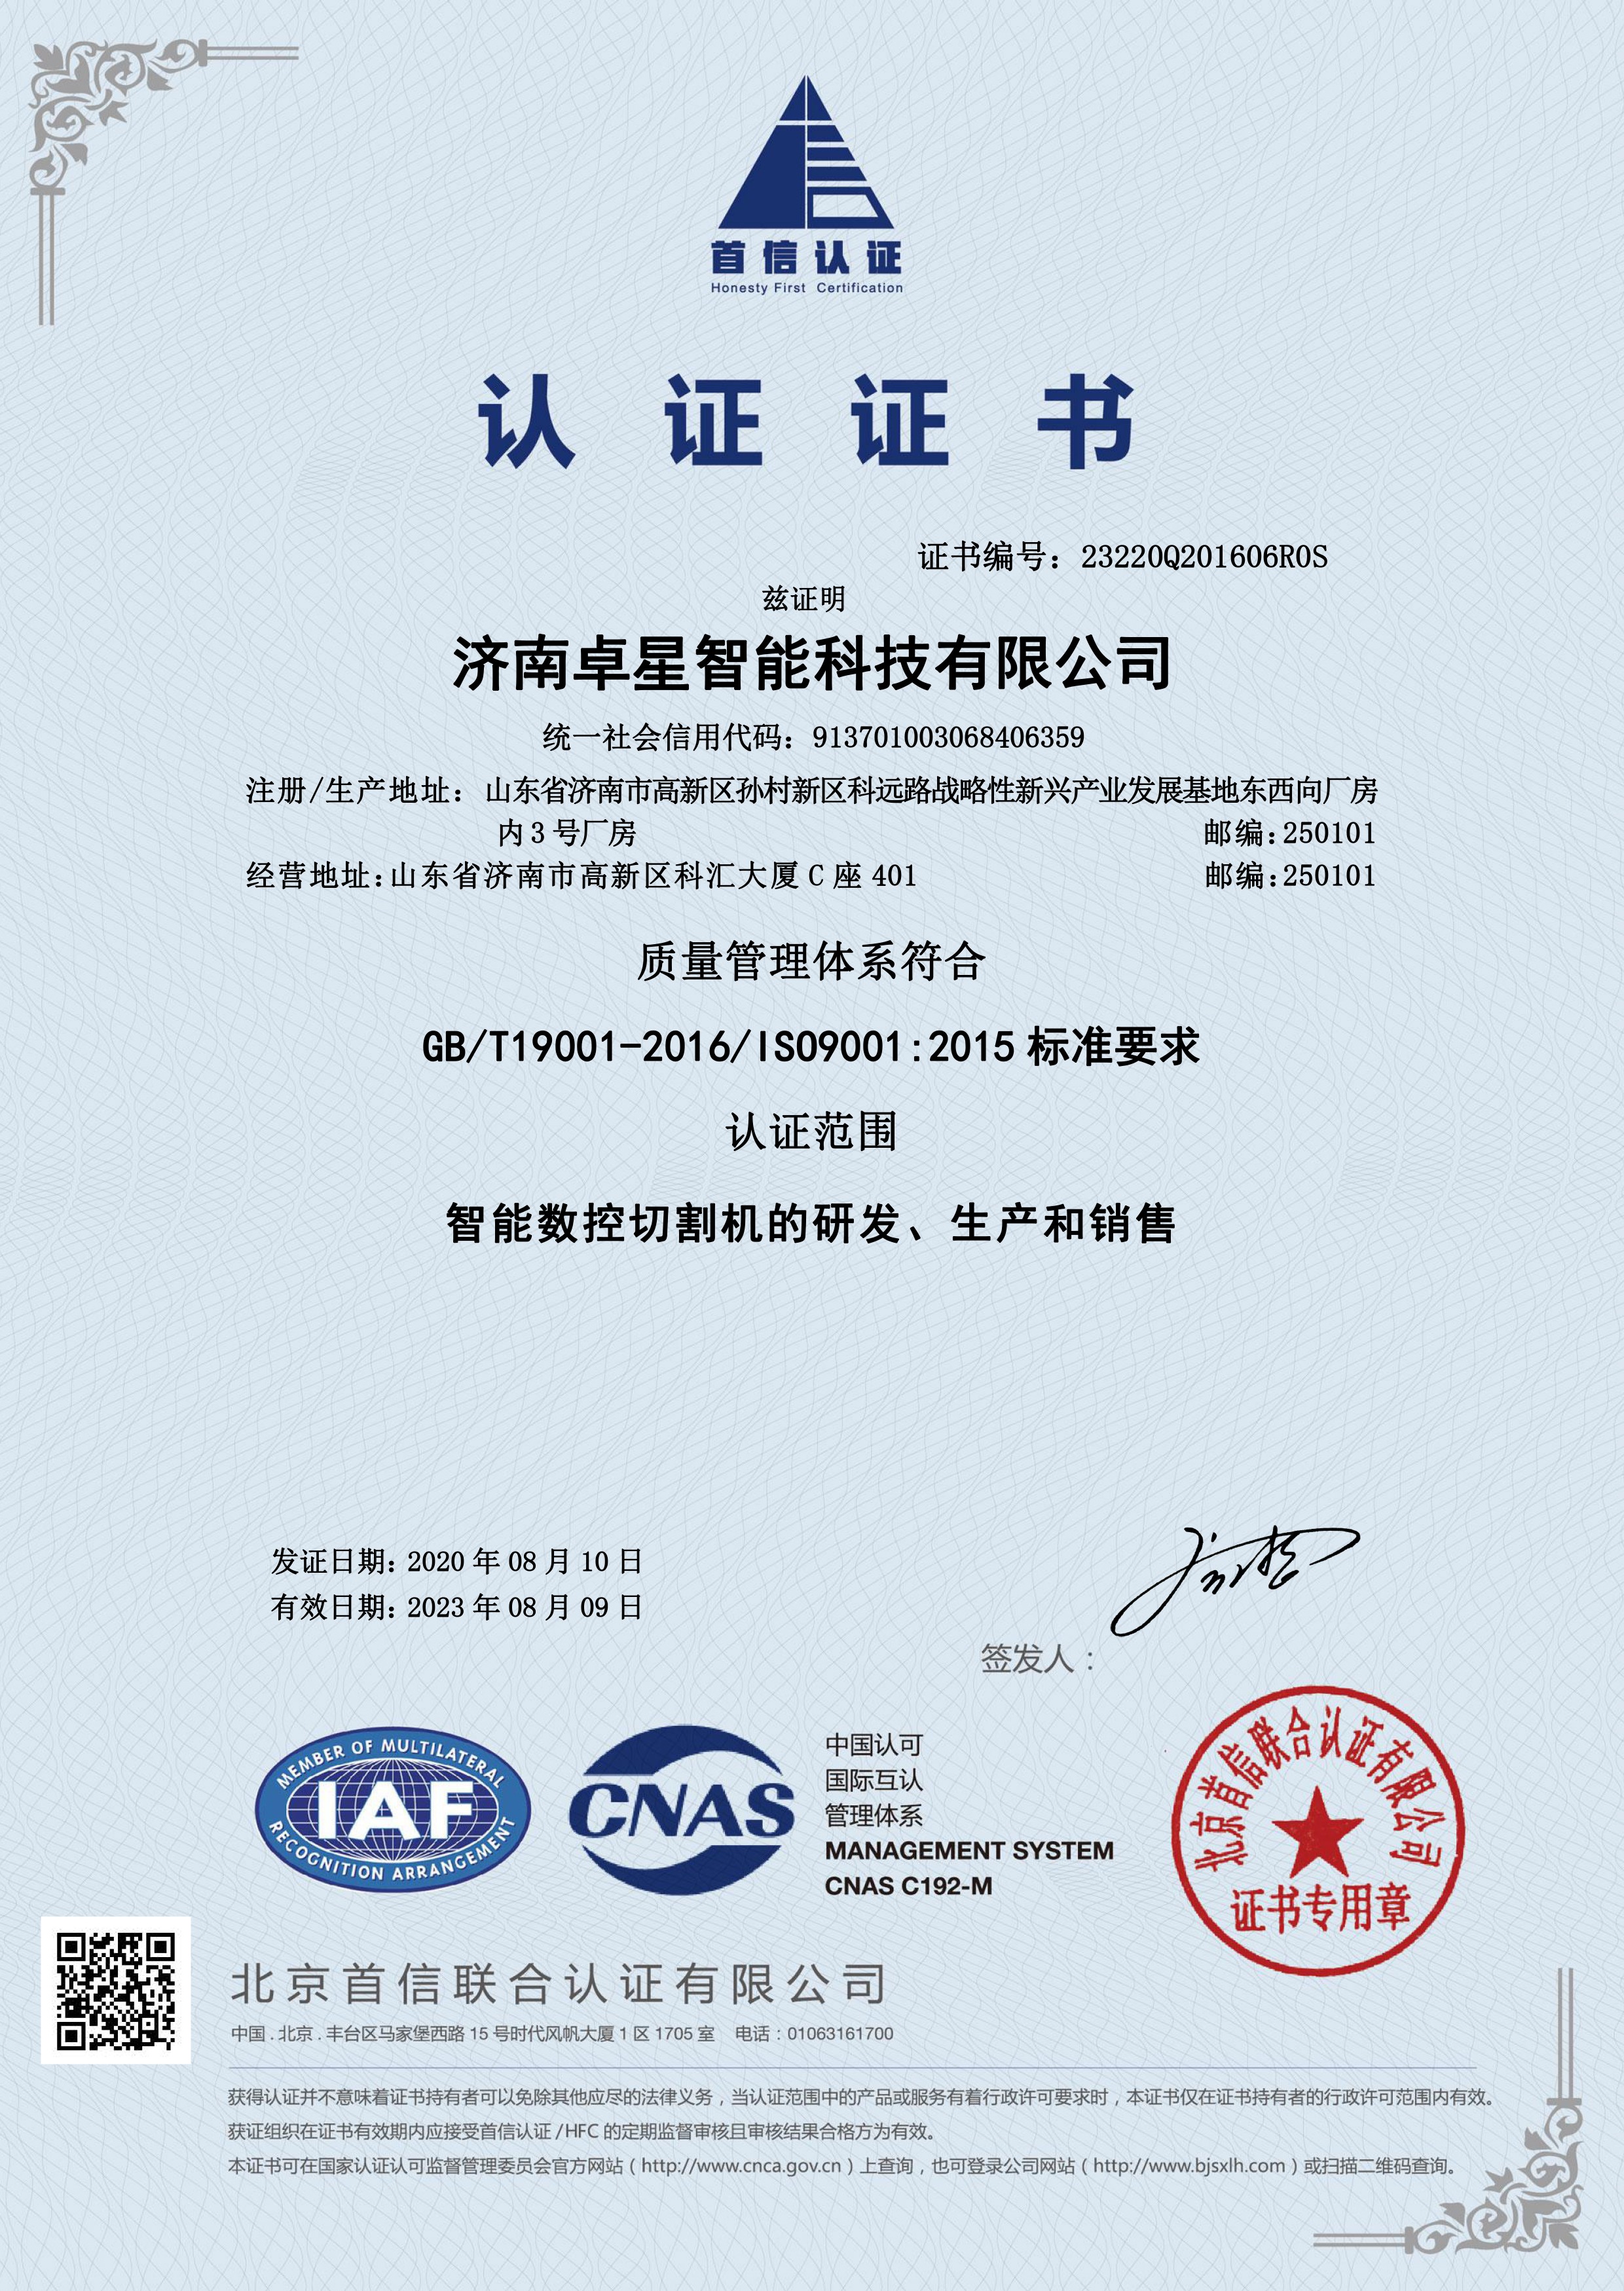 新的ISO-9001中文